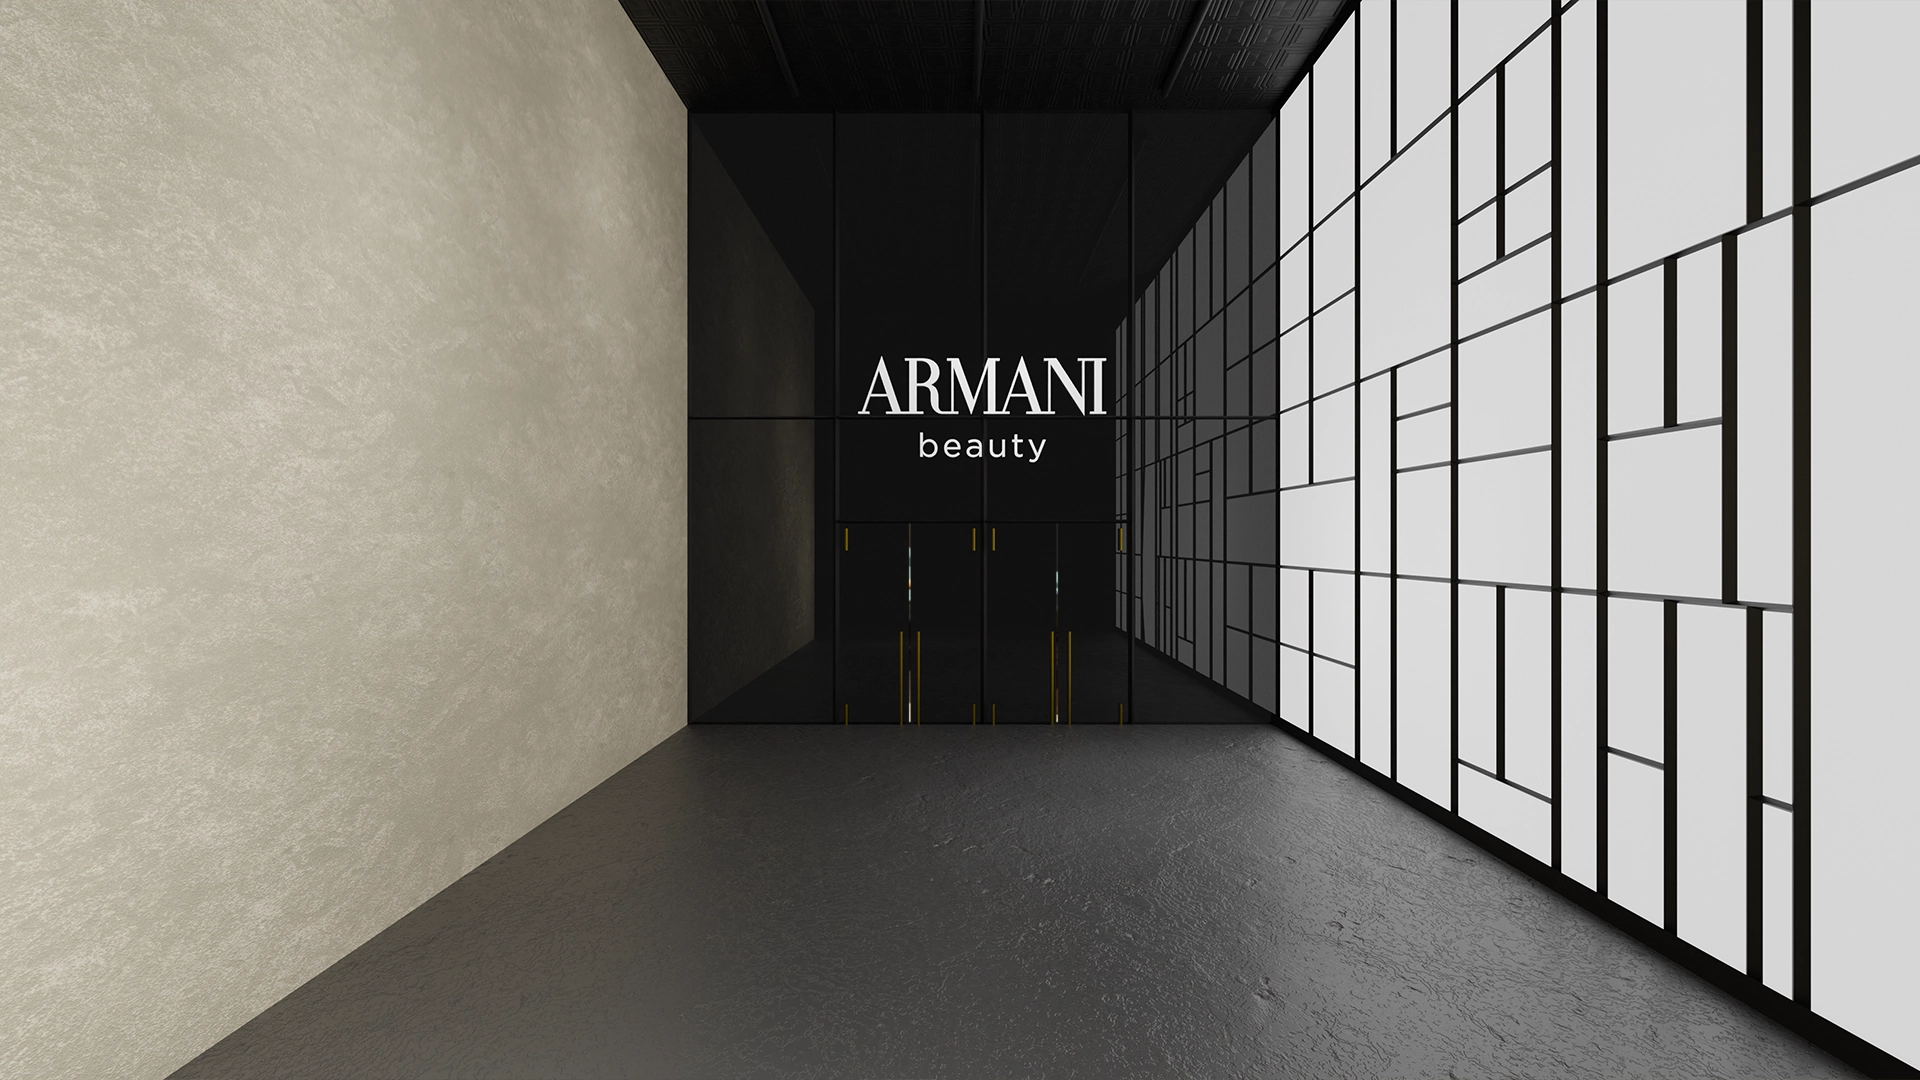 Nel mondo fashion, Think Djungle ha sviluppato grafiche per eventi relativi al brand di Armani Beauty